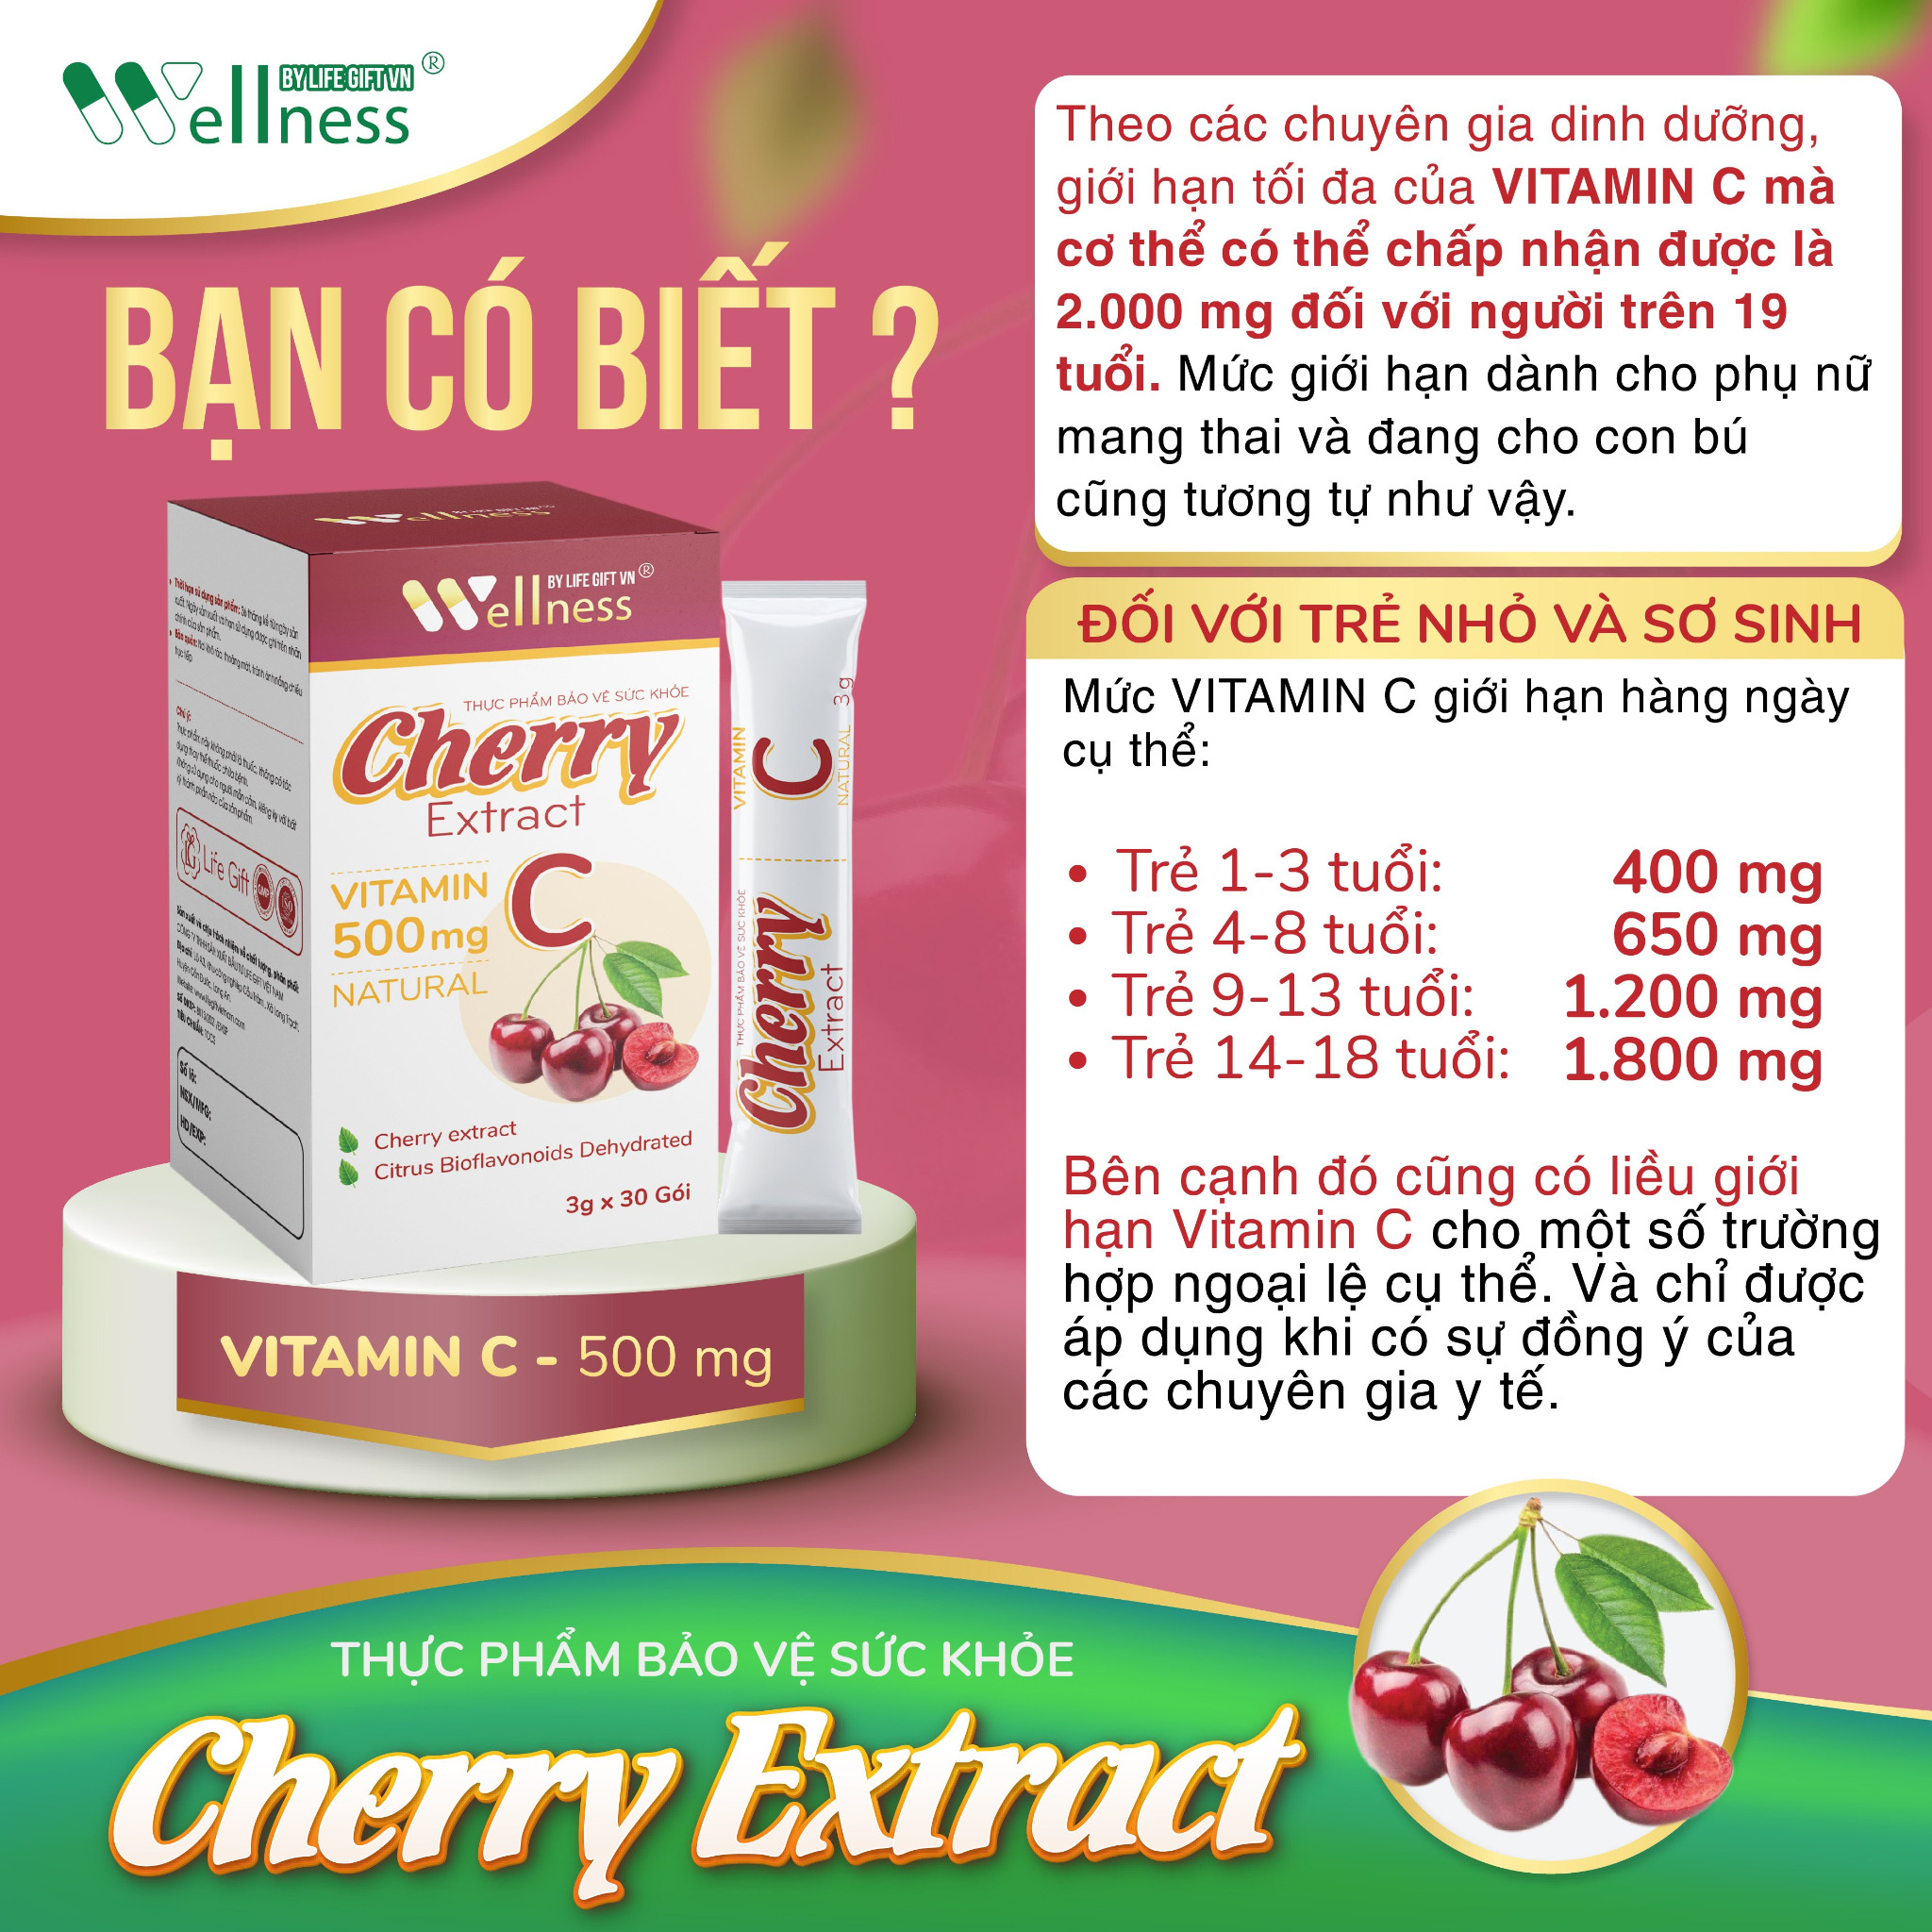 Thực phẩm bảo vệ sức khỏe Cherry Extract Vitamin C – Hàm lượng Vitamin C cần thiết cho từng lứa tuổi - Droppii Shops